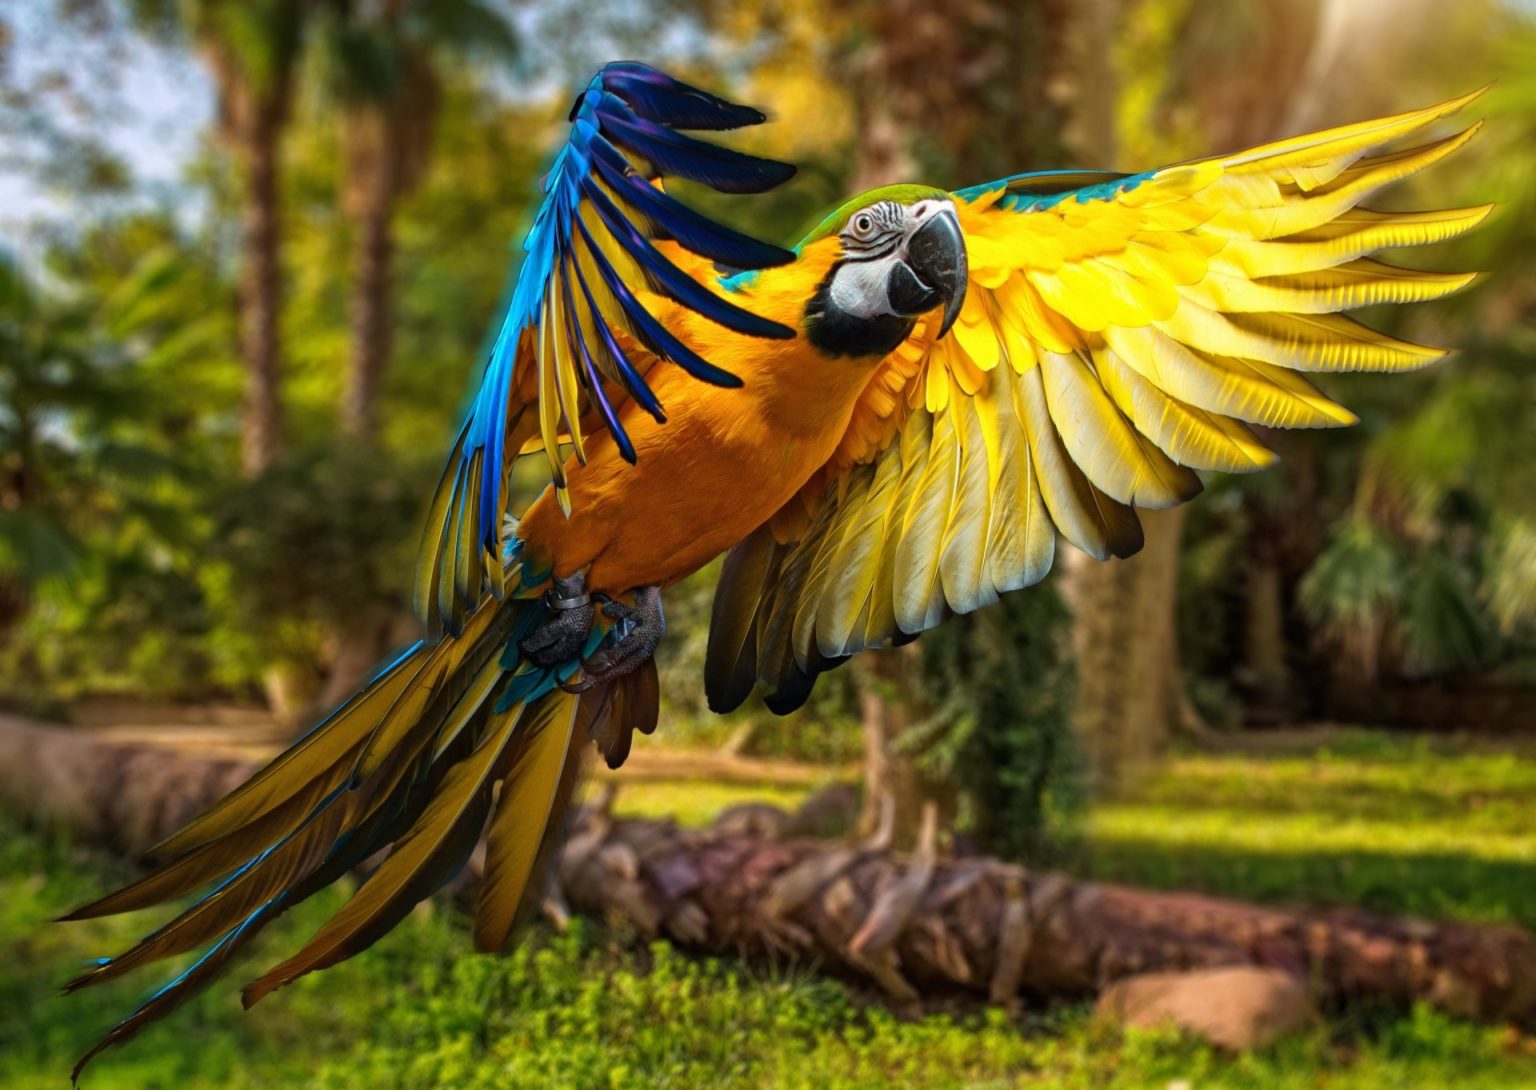 Tổng hợp hình ảnh chim Vẹt đẹp nhất - [Kích thước hình ảnh: 1536x1090 px]